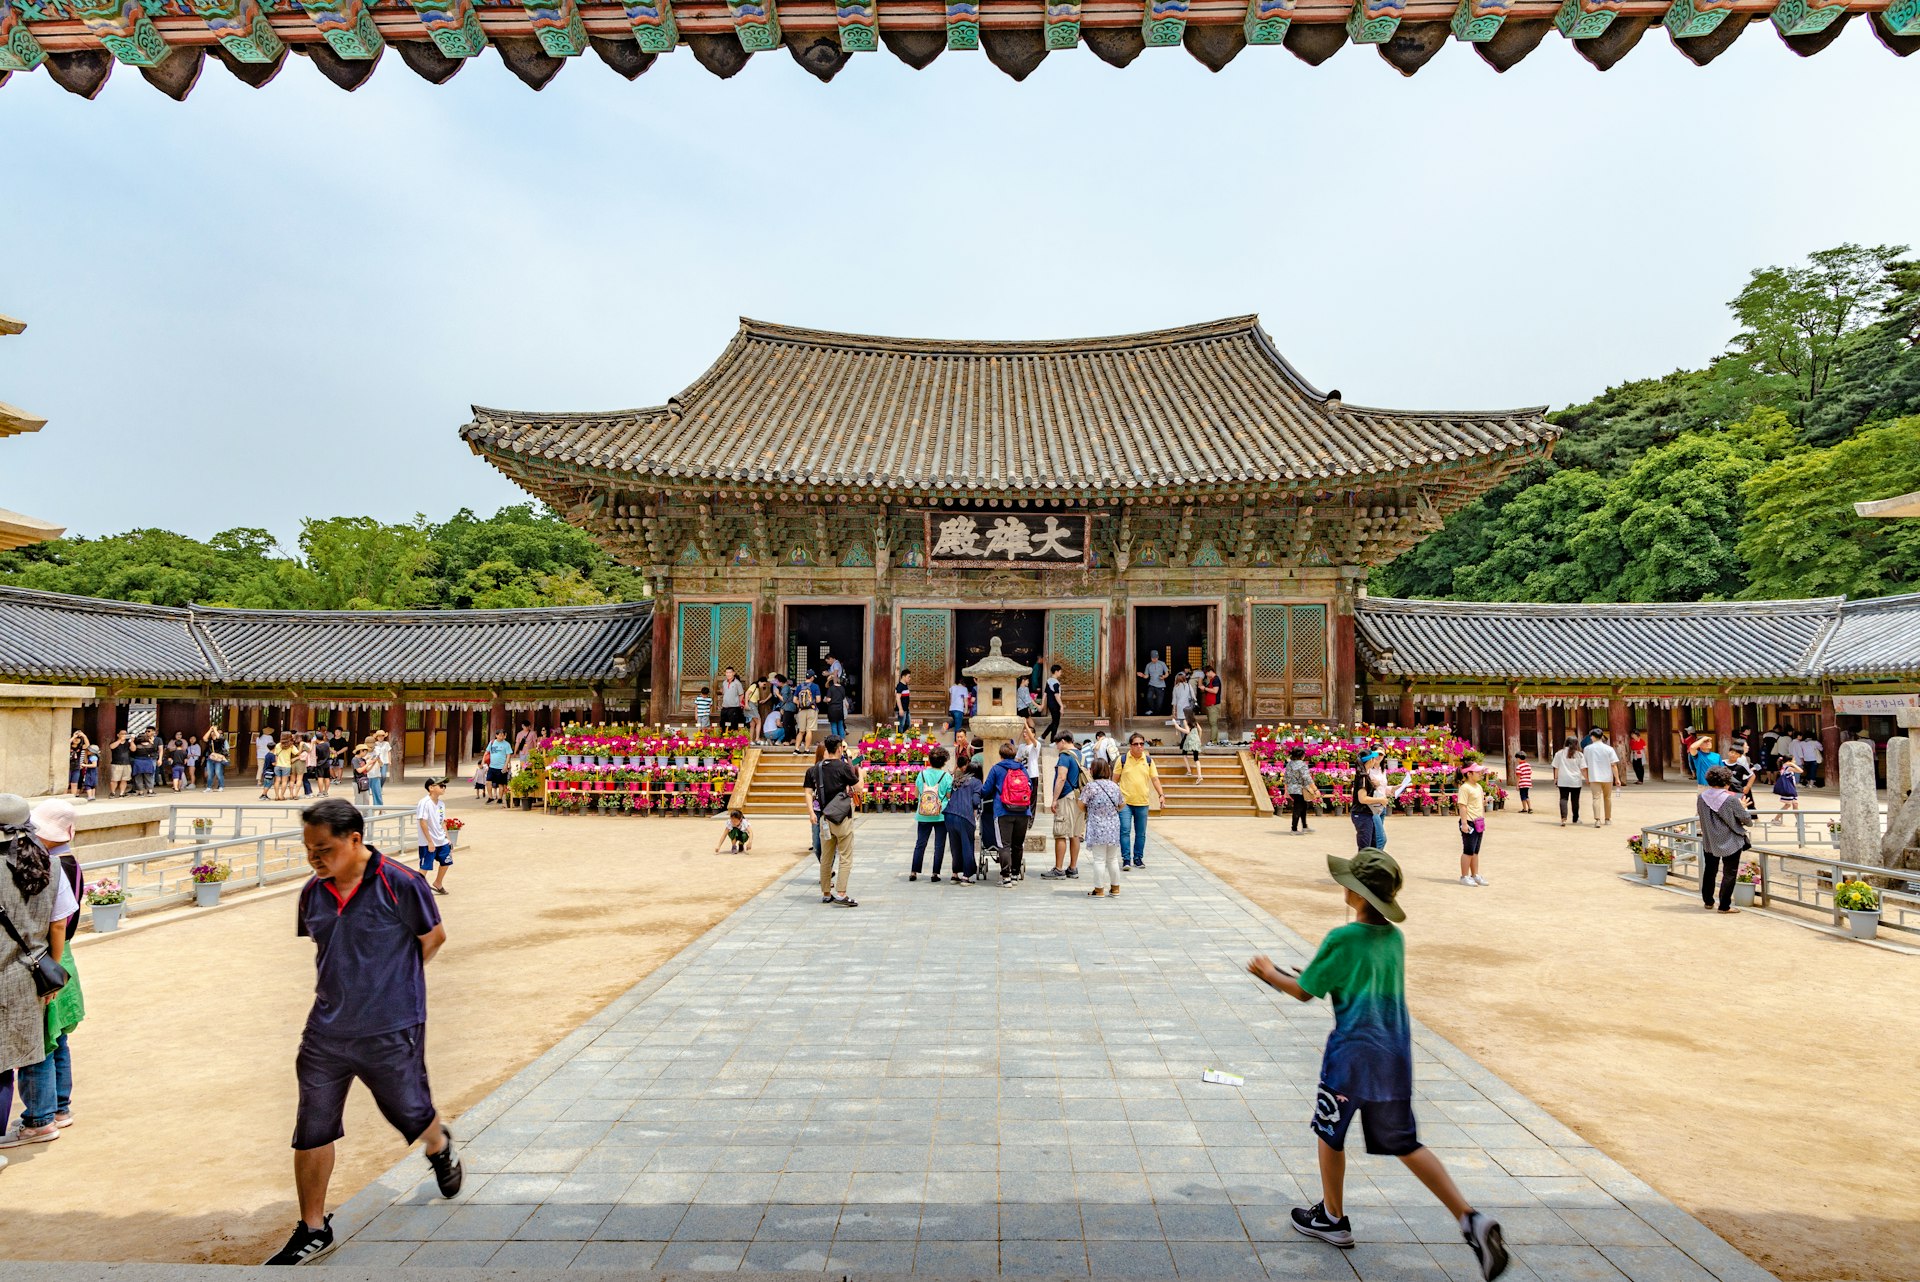 Visitors at the Bulguksa temple in Gyeongju